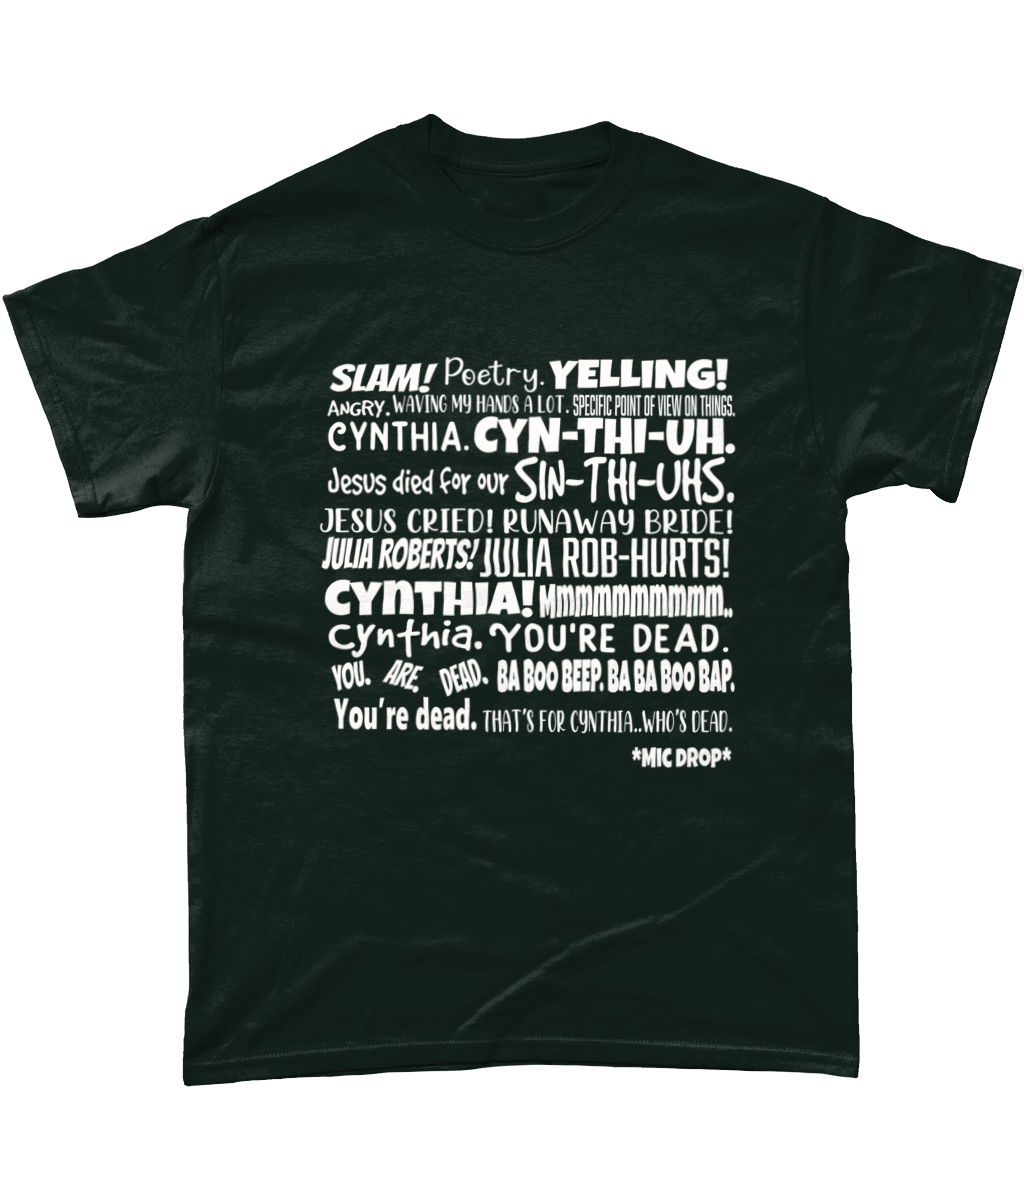 Cynthia Slam Poetry T-Shirt